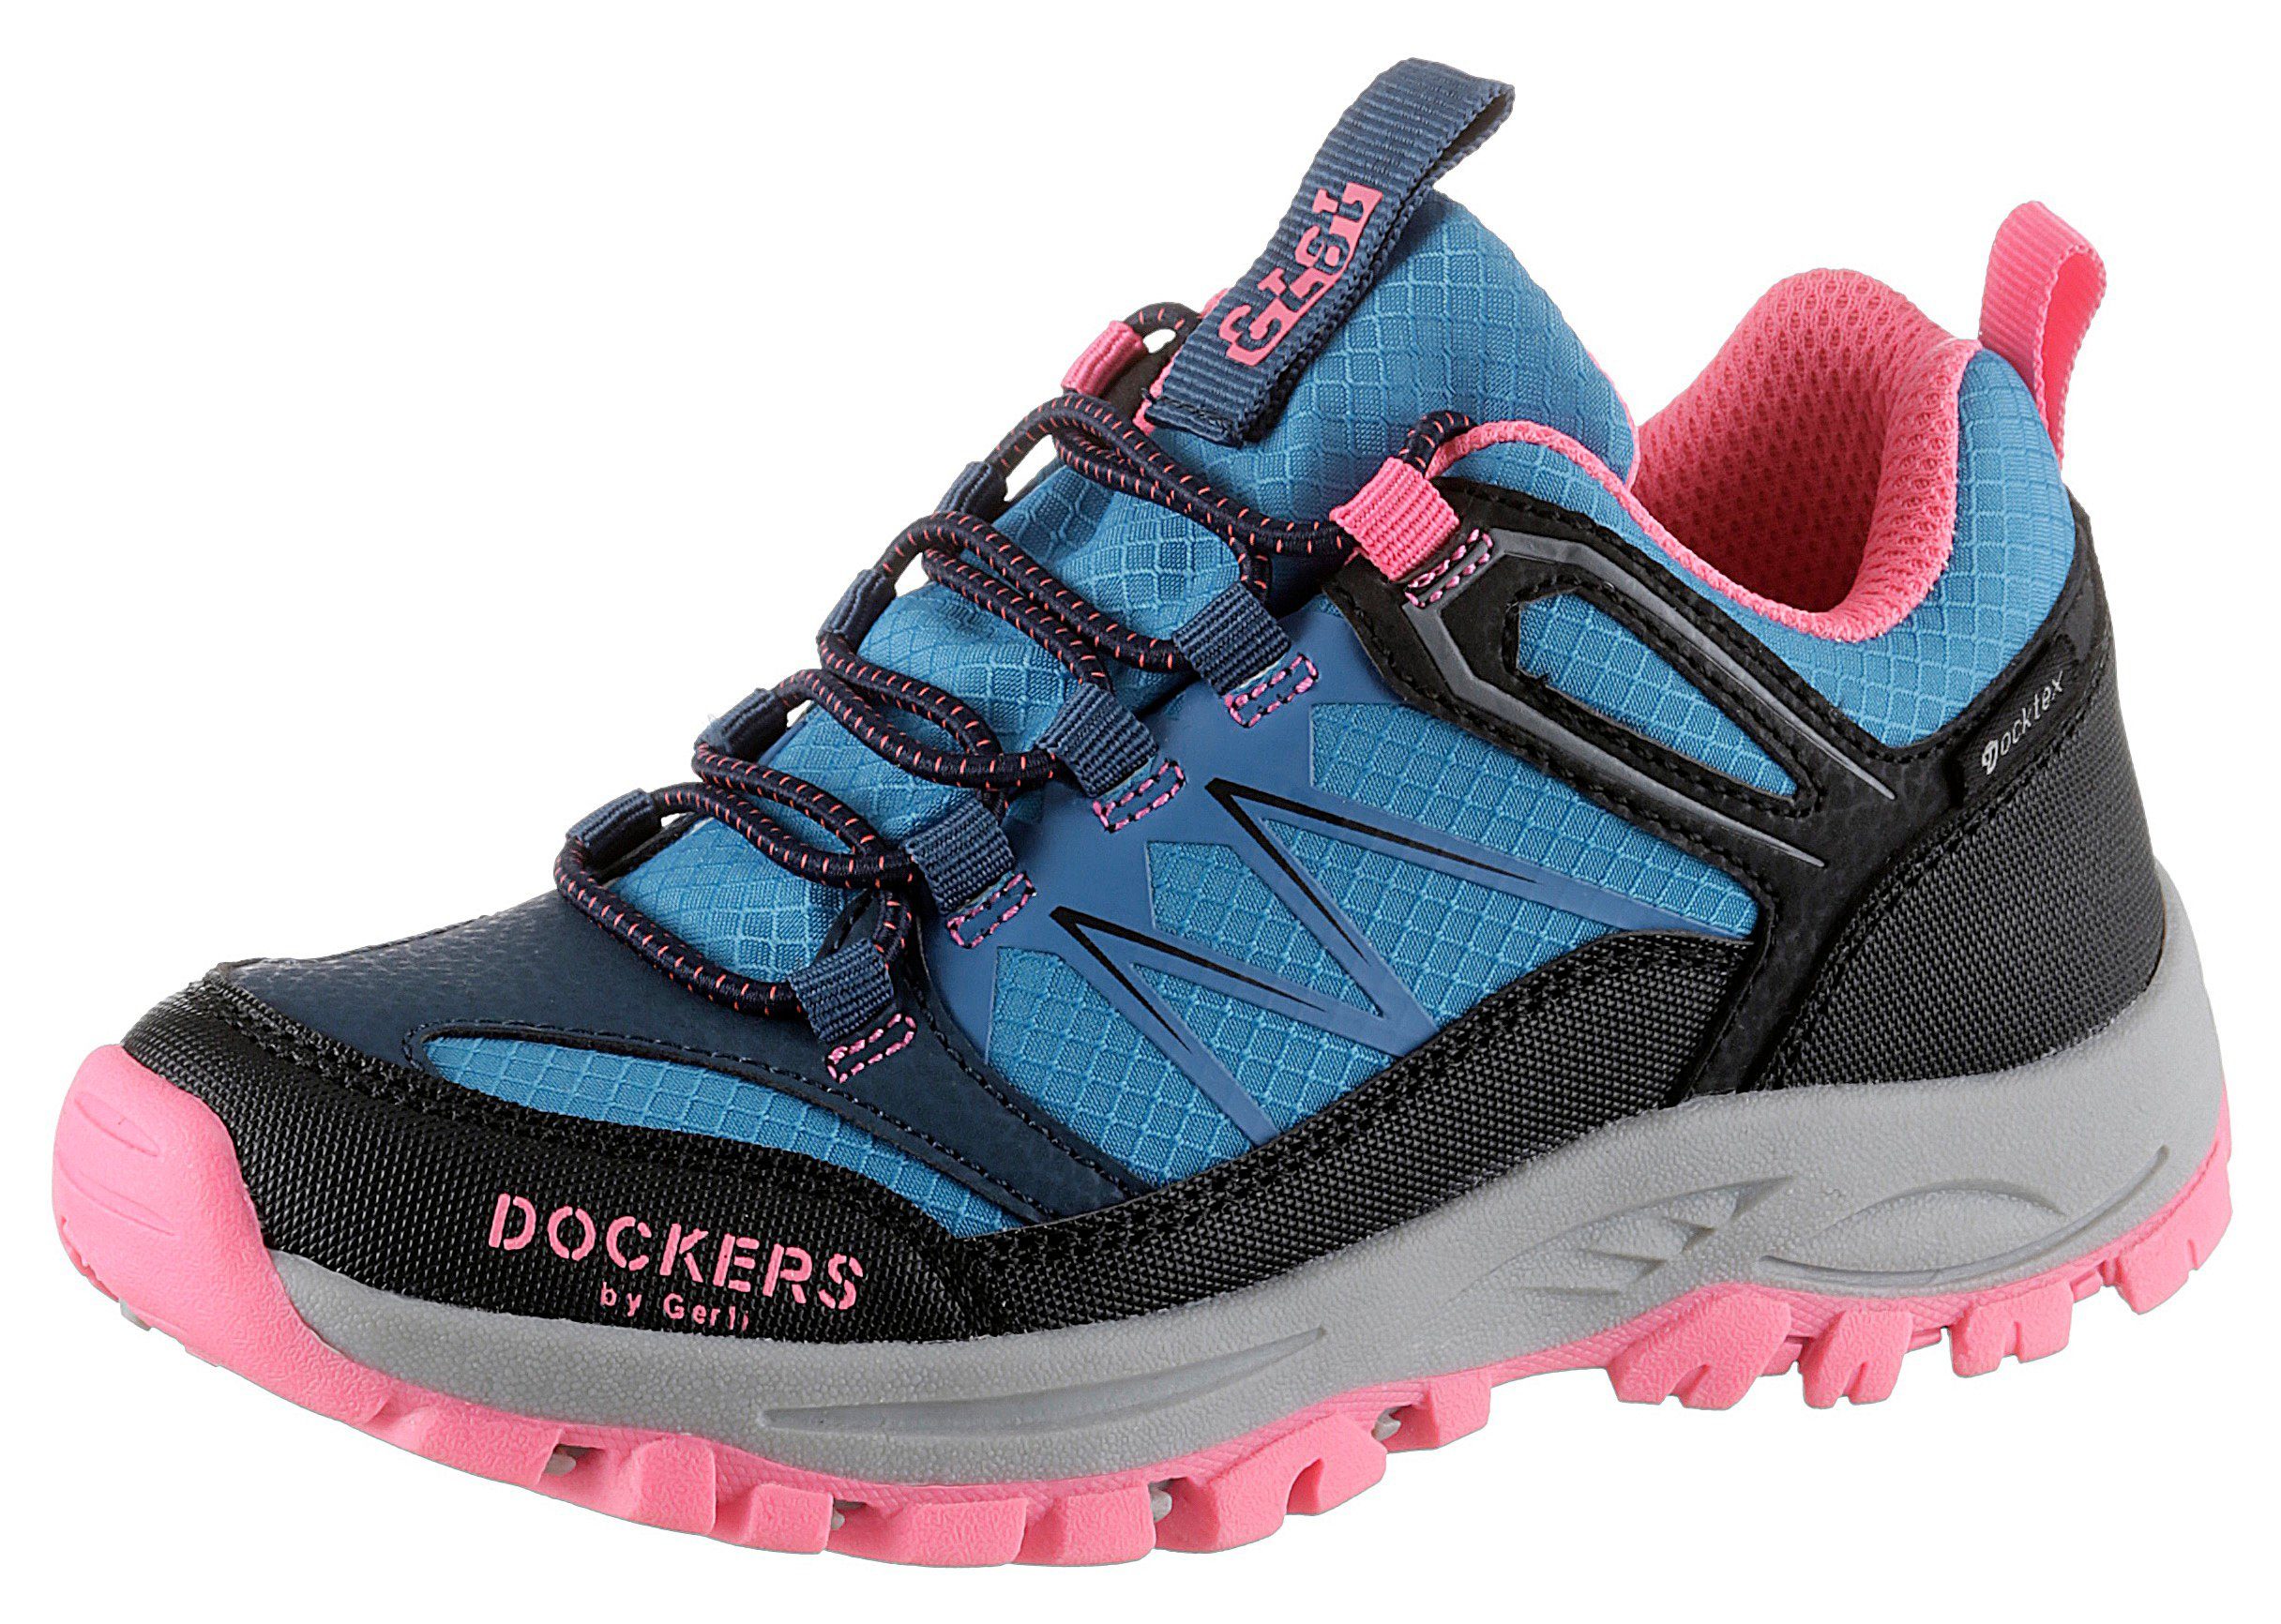 mit blau-schwarz-pink by Slip-On Sneaker Gerli Dockers Schnellverschluss